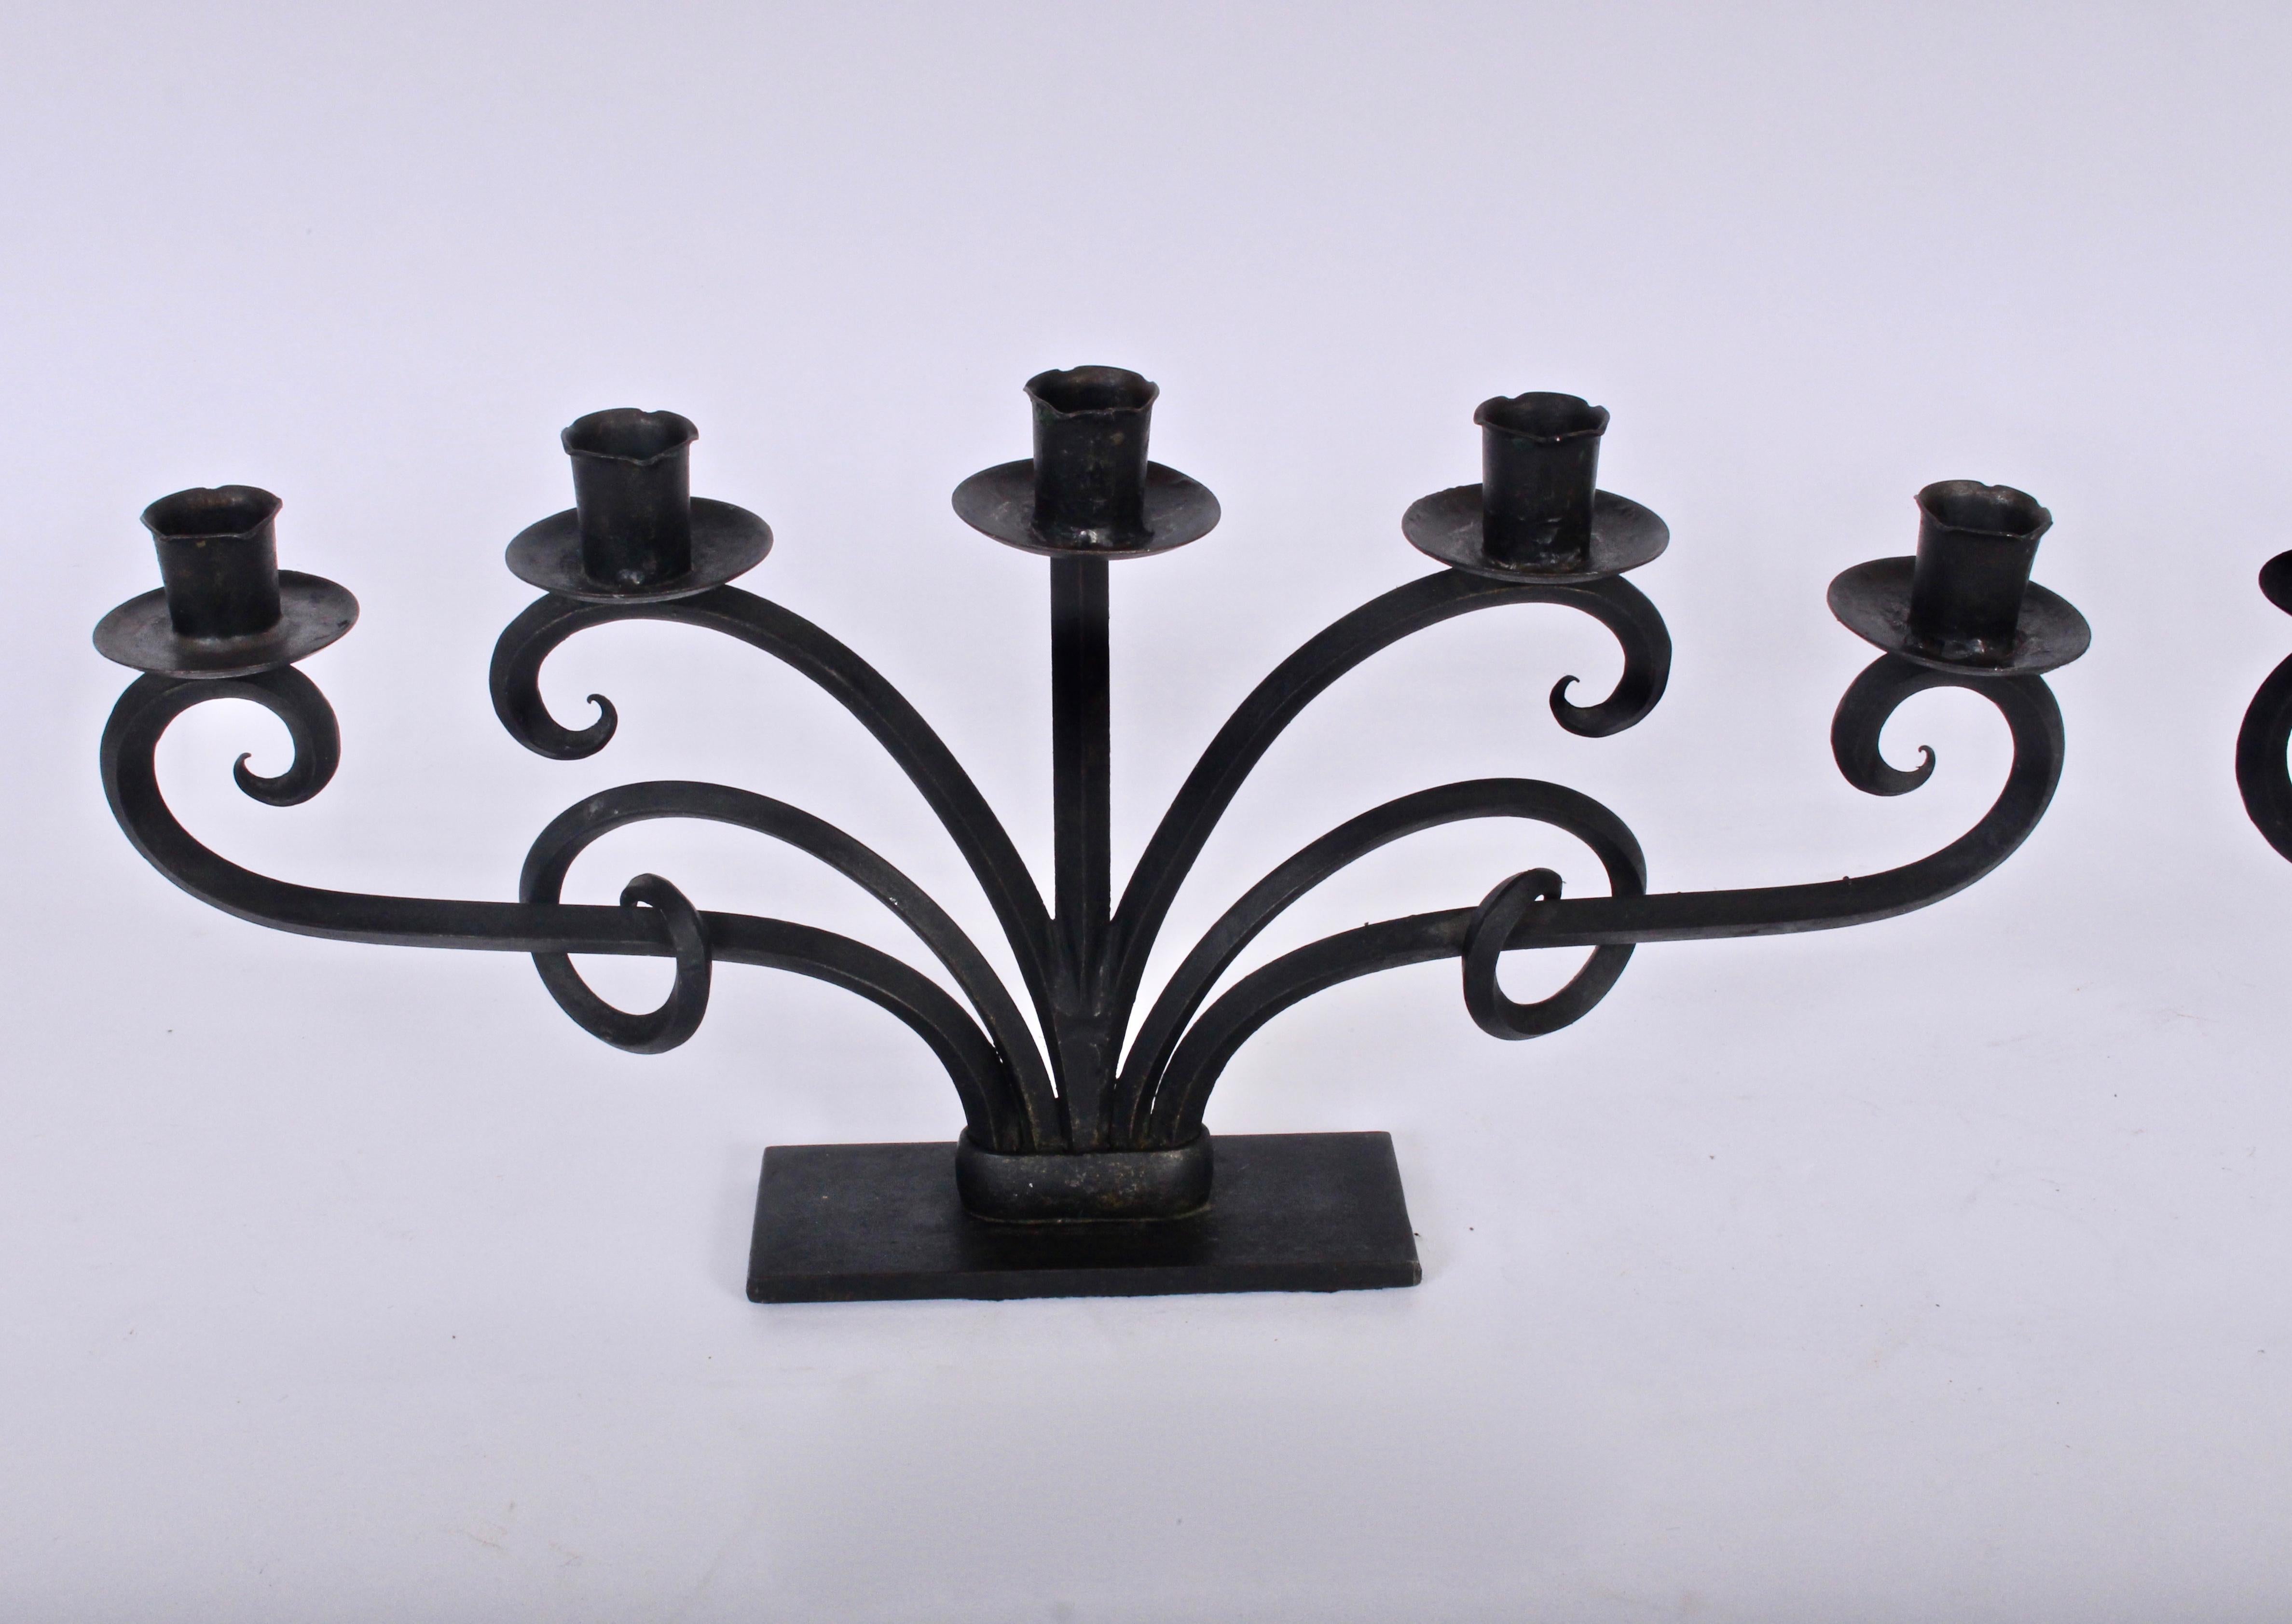 Breites Paar norwegischer moderner handgefertigter, sechsarmiger, verschnörkelter Kerzenhalter aus schwarzem Eisen, in der Art von Just Andersen.  Mit eisernen Bechern zum Auffangen von Kerzentropfen und skulpturalem Schneckendesign. Zwei Stücke,